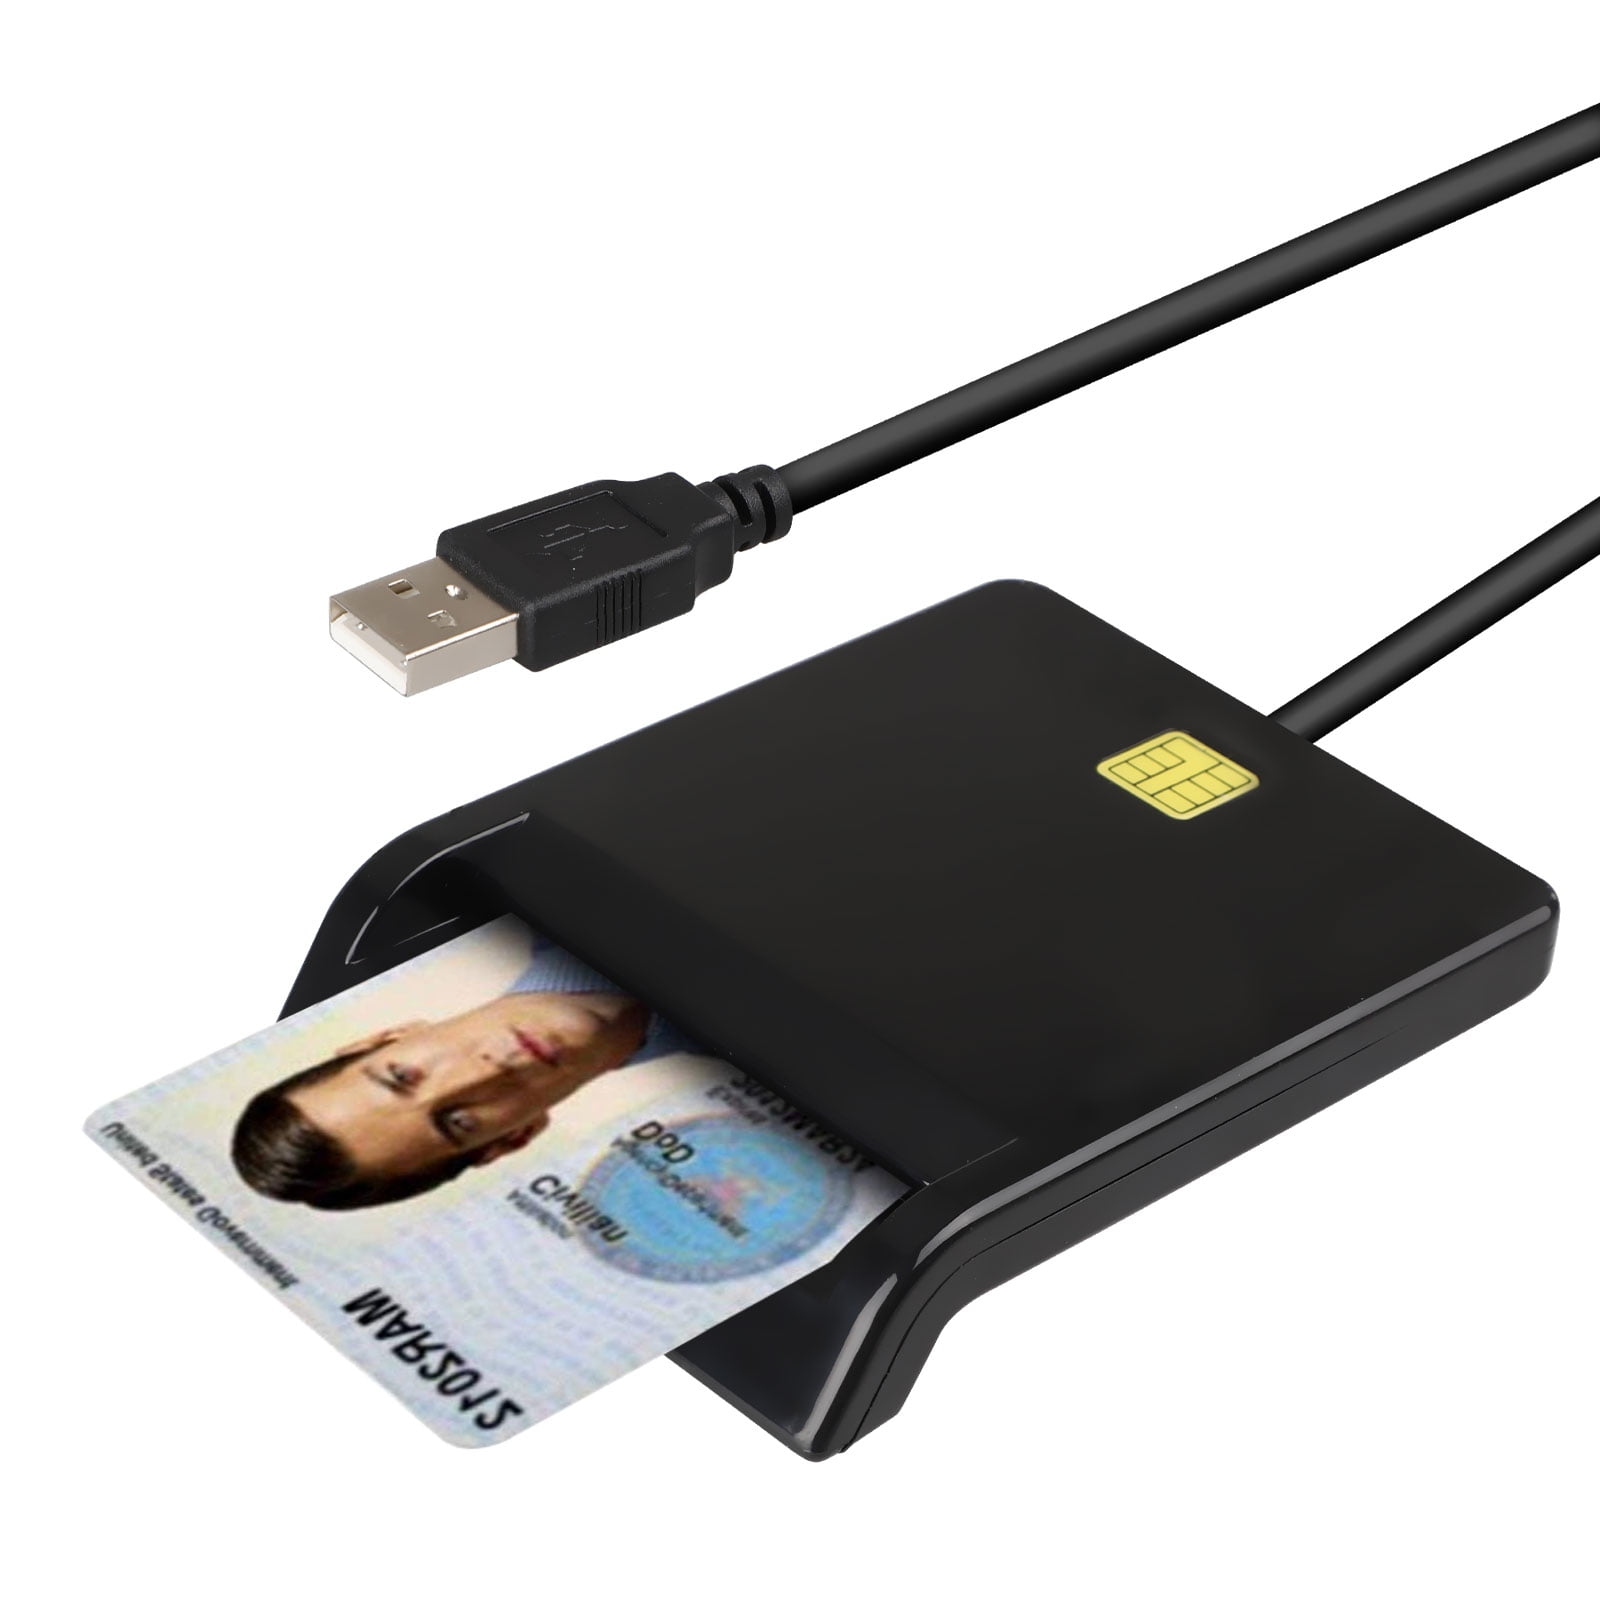 Black Belkin USB Smart Card/CAC Reader